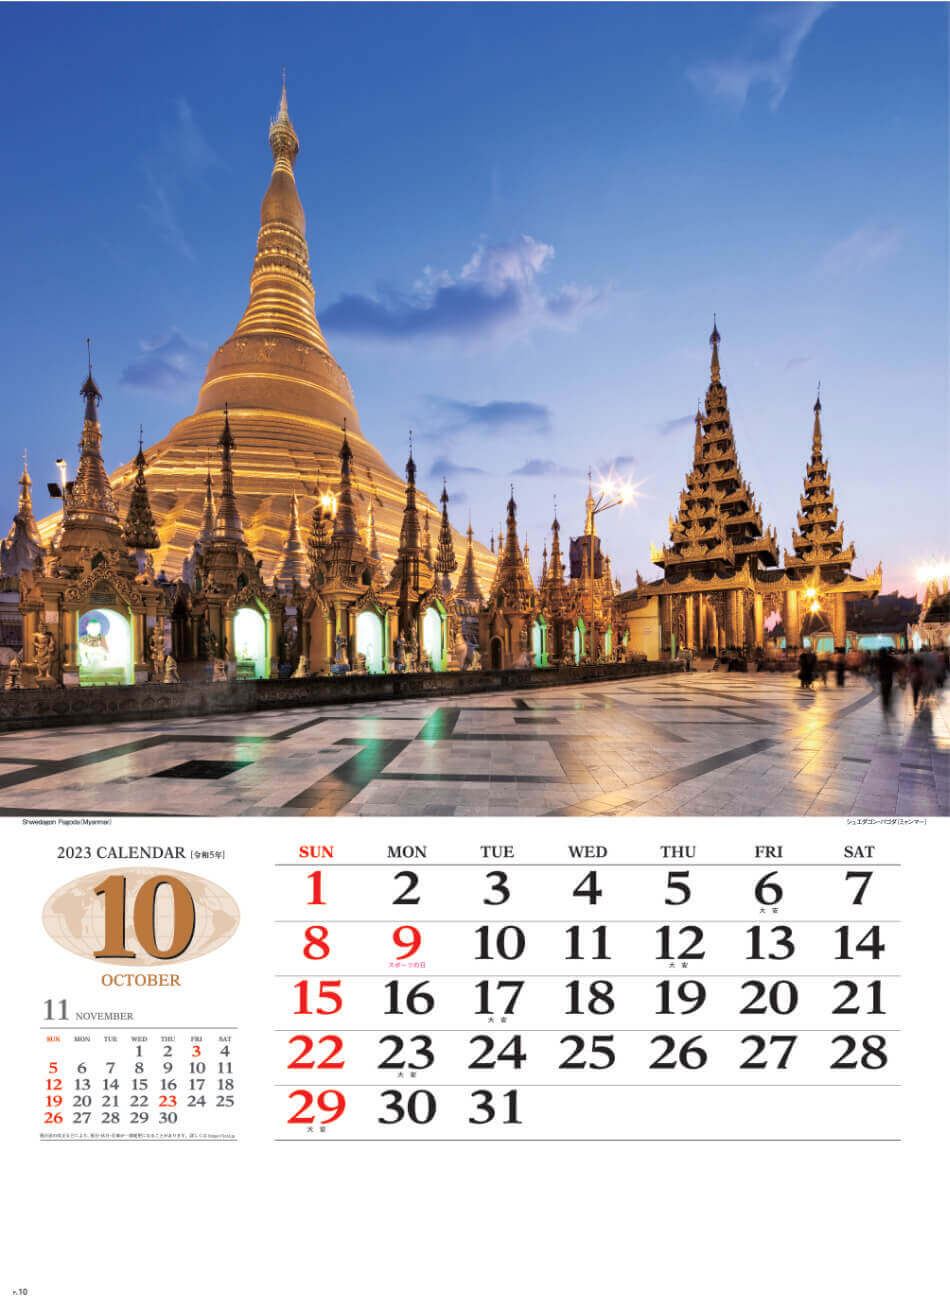 10月 ジュエタゴン・パゴダ(ミャンマー) 世界の景観 2023年カレンダーの画像